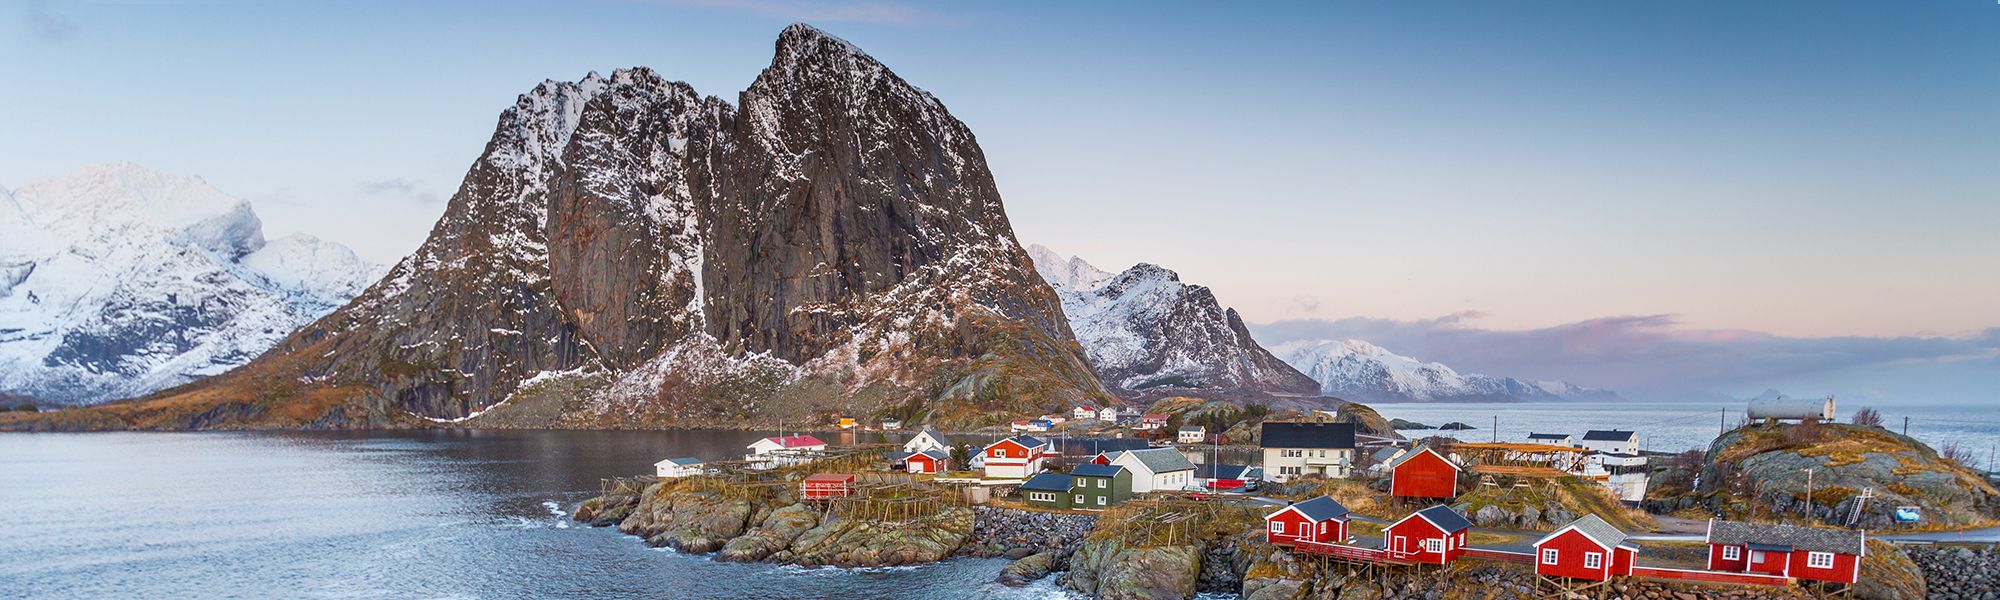 Croisière et voile Norvège © Alex Cornu - Visit Norway